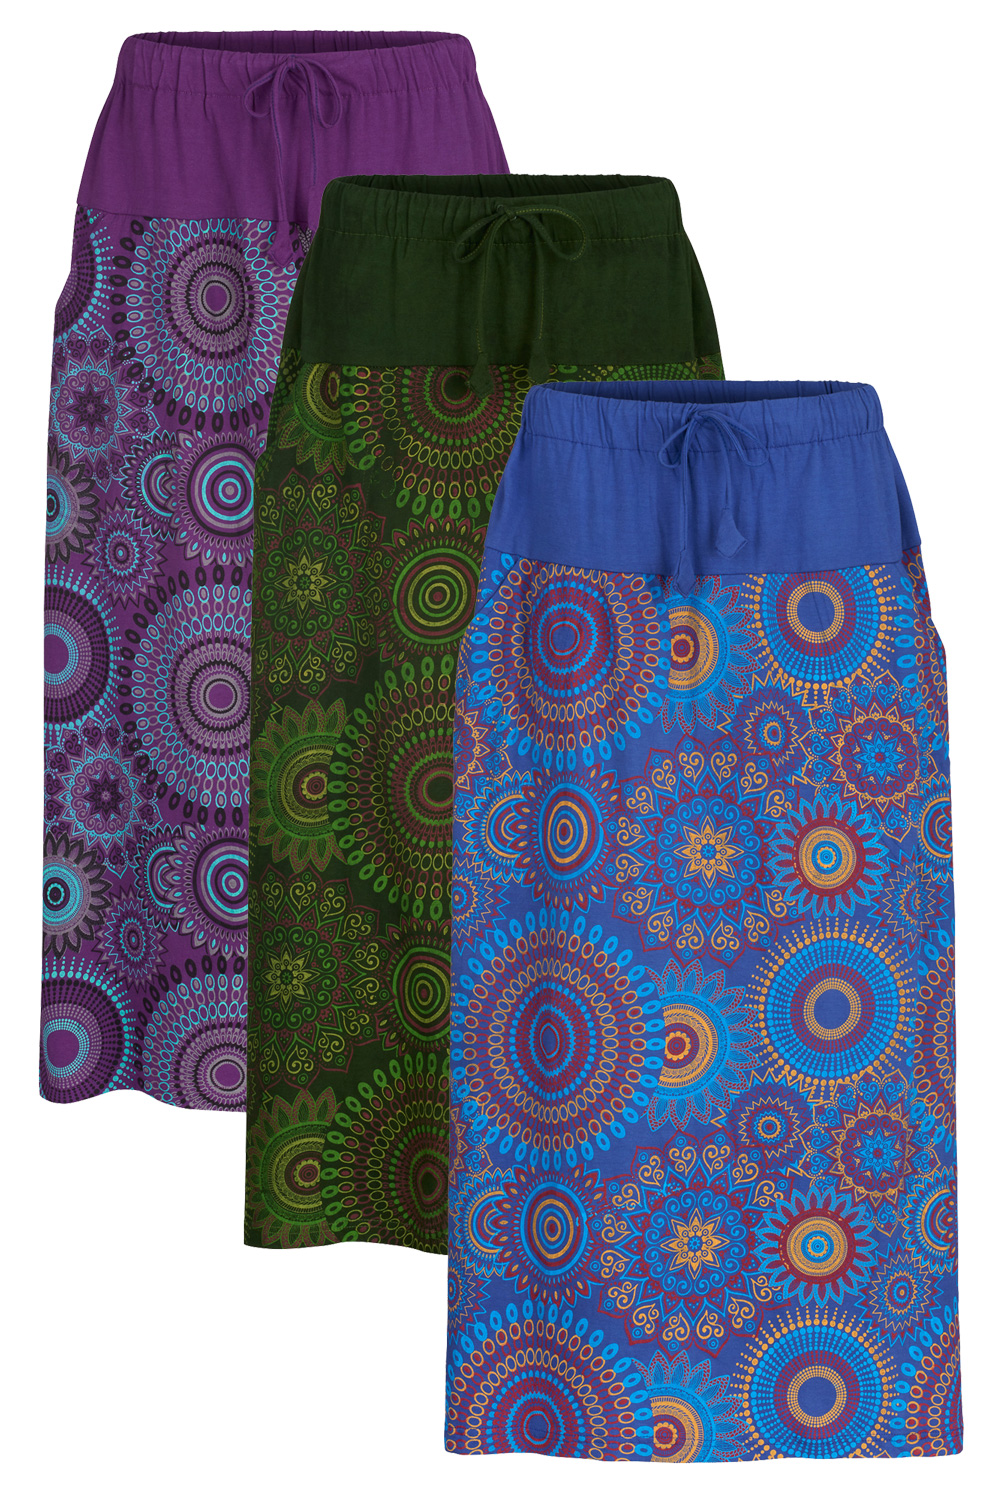 Mandala printed maxi skirt with pockets